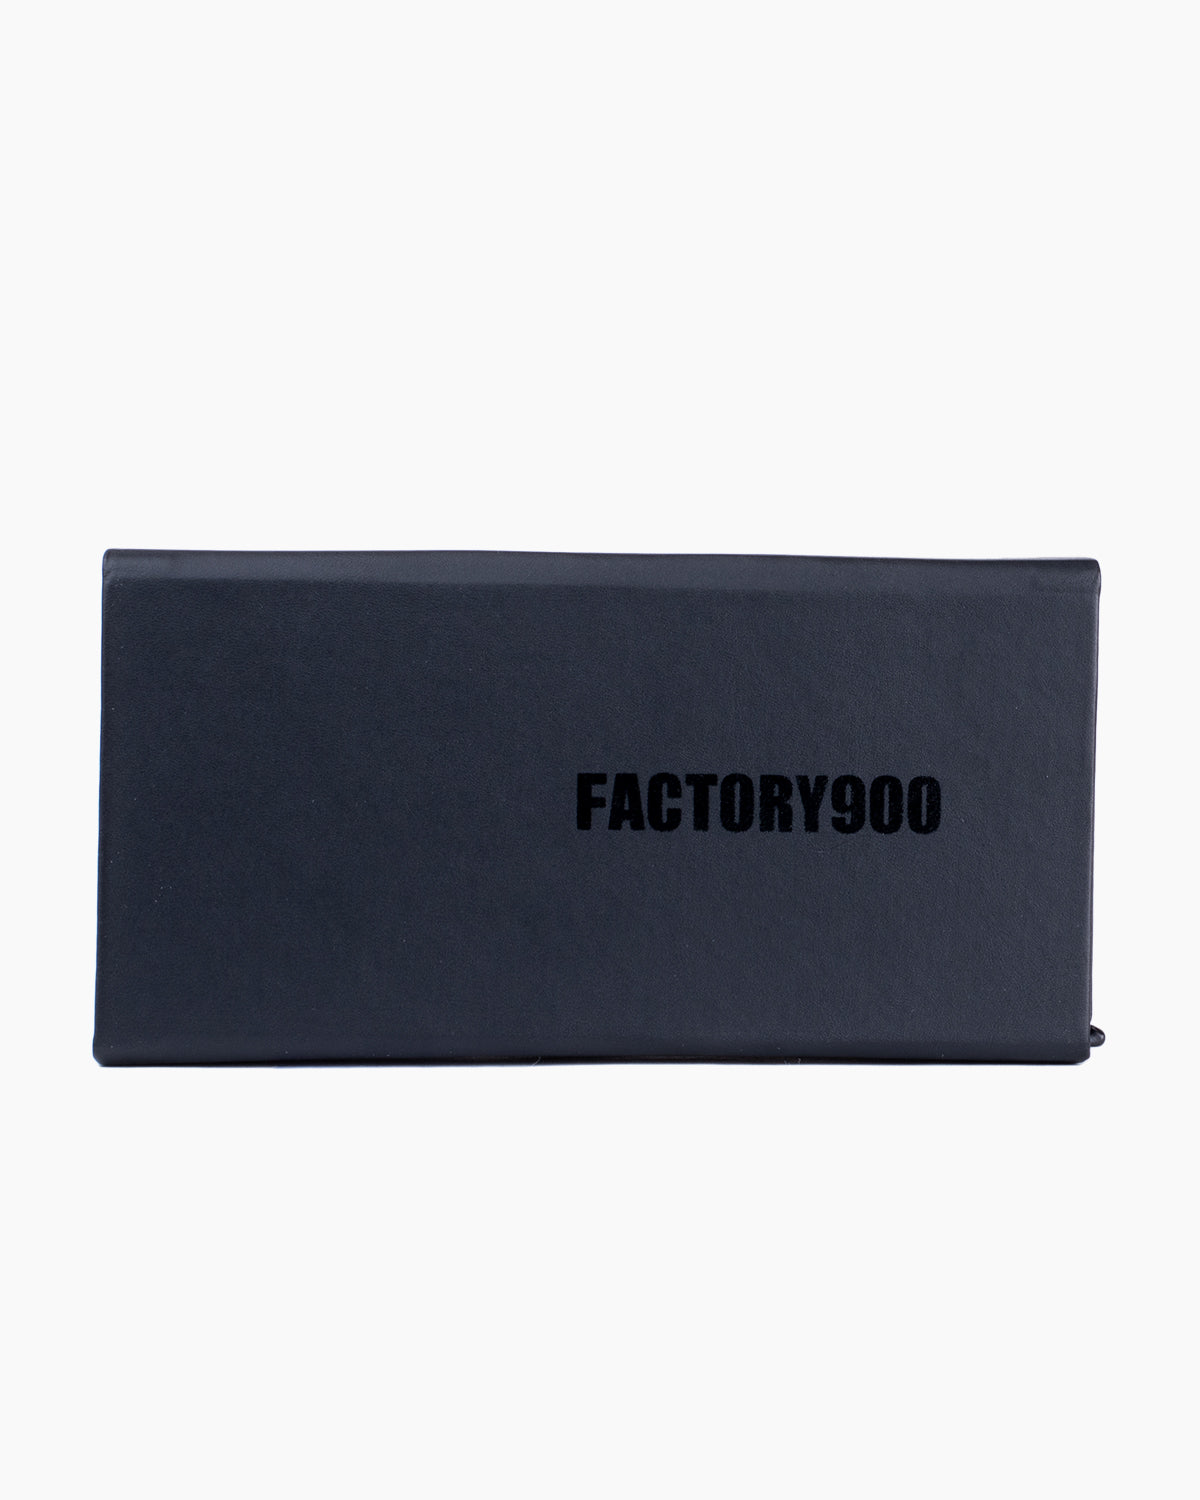 Factory 900 - MF001 - 02 | Bar à lunettes:  Marie-Sophie Dion